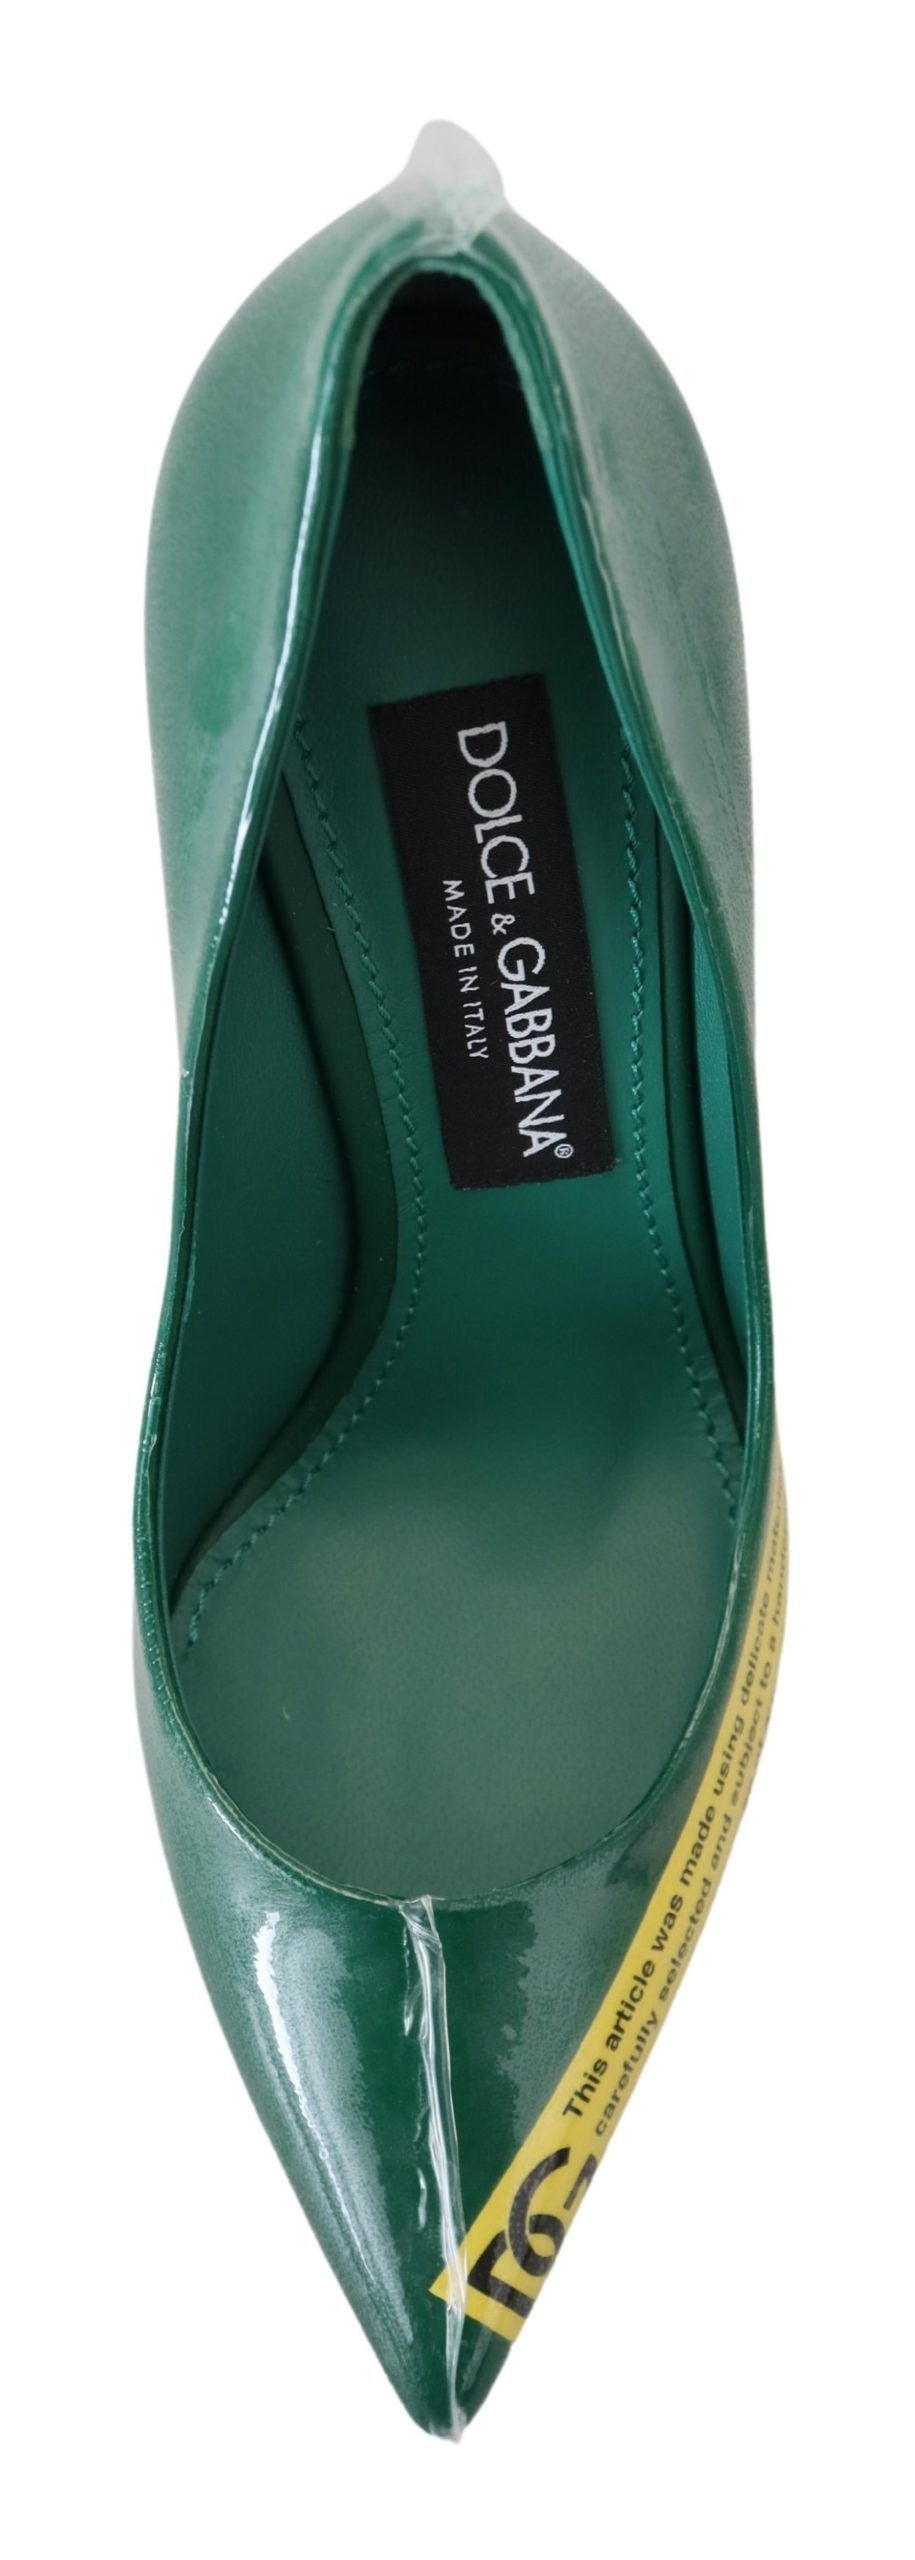 Dolce & Gabbana Talons en cuir vert pompes chaussures en plastique